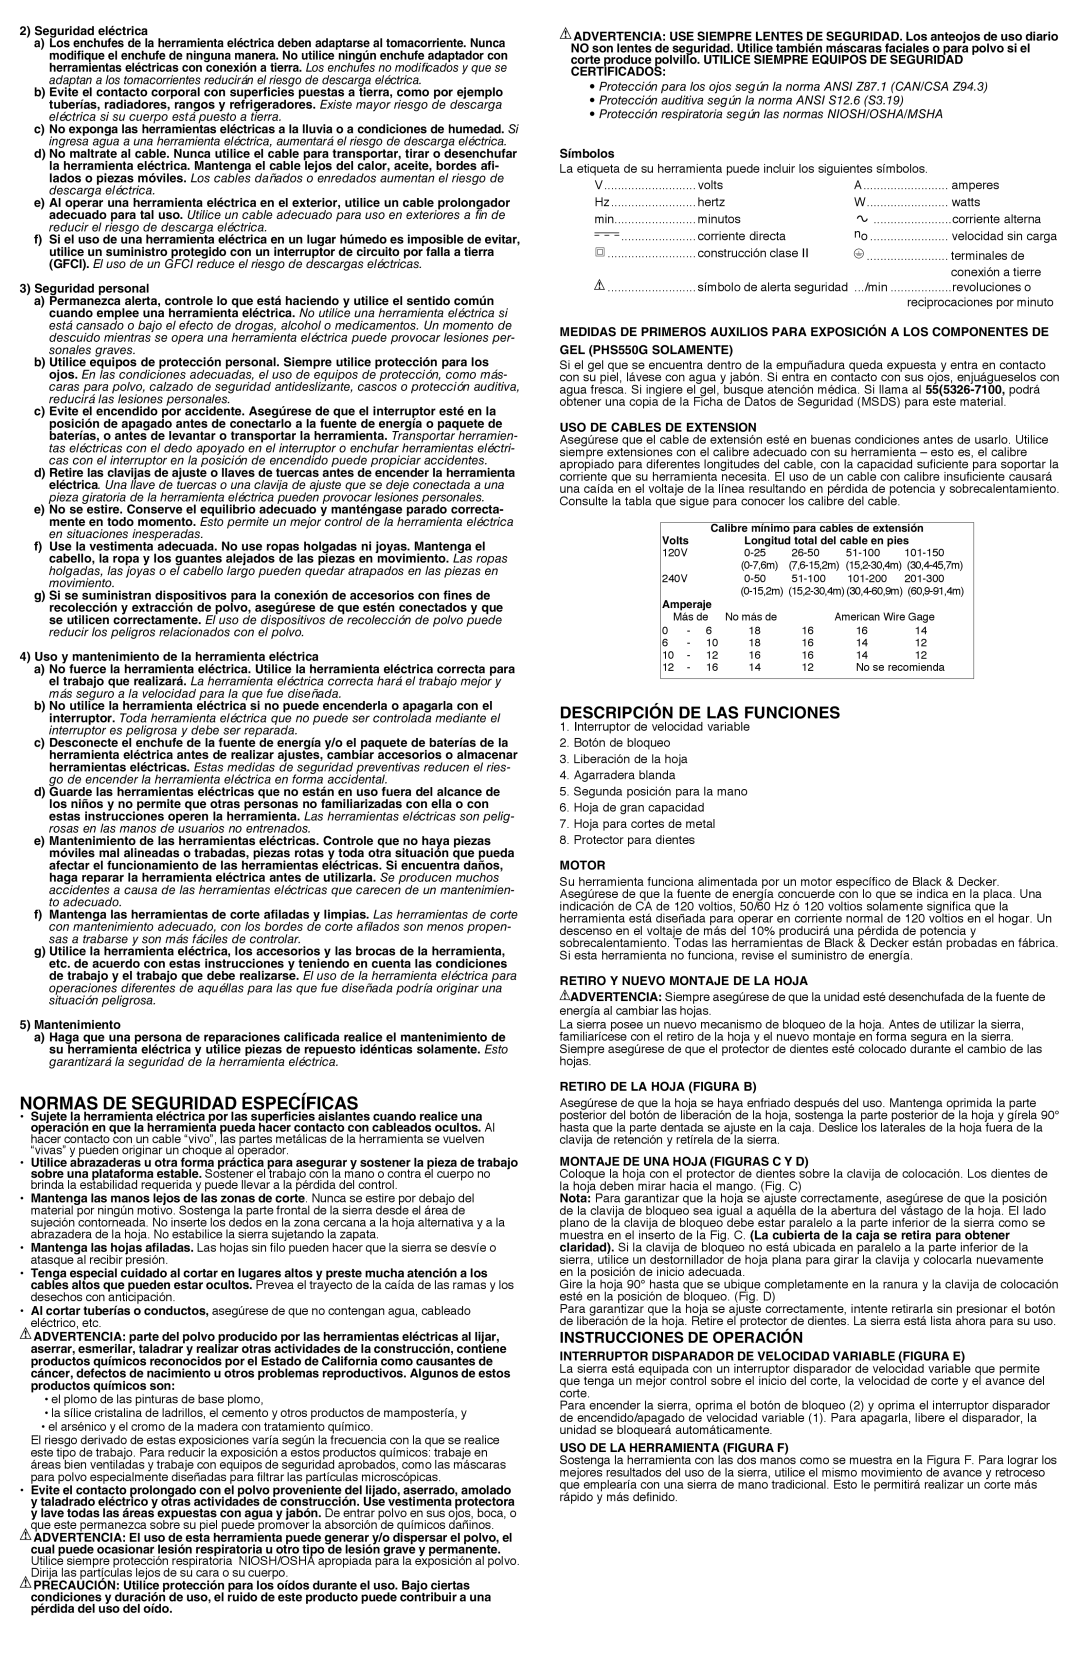 Black & Decker PHS550B, PHS550G Normas de seguridad específicas, Descripción De Las Funciones, Instrucciones de operación 